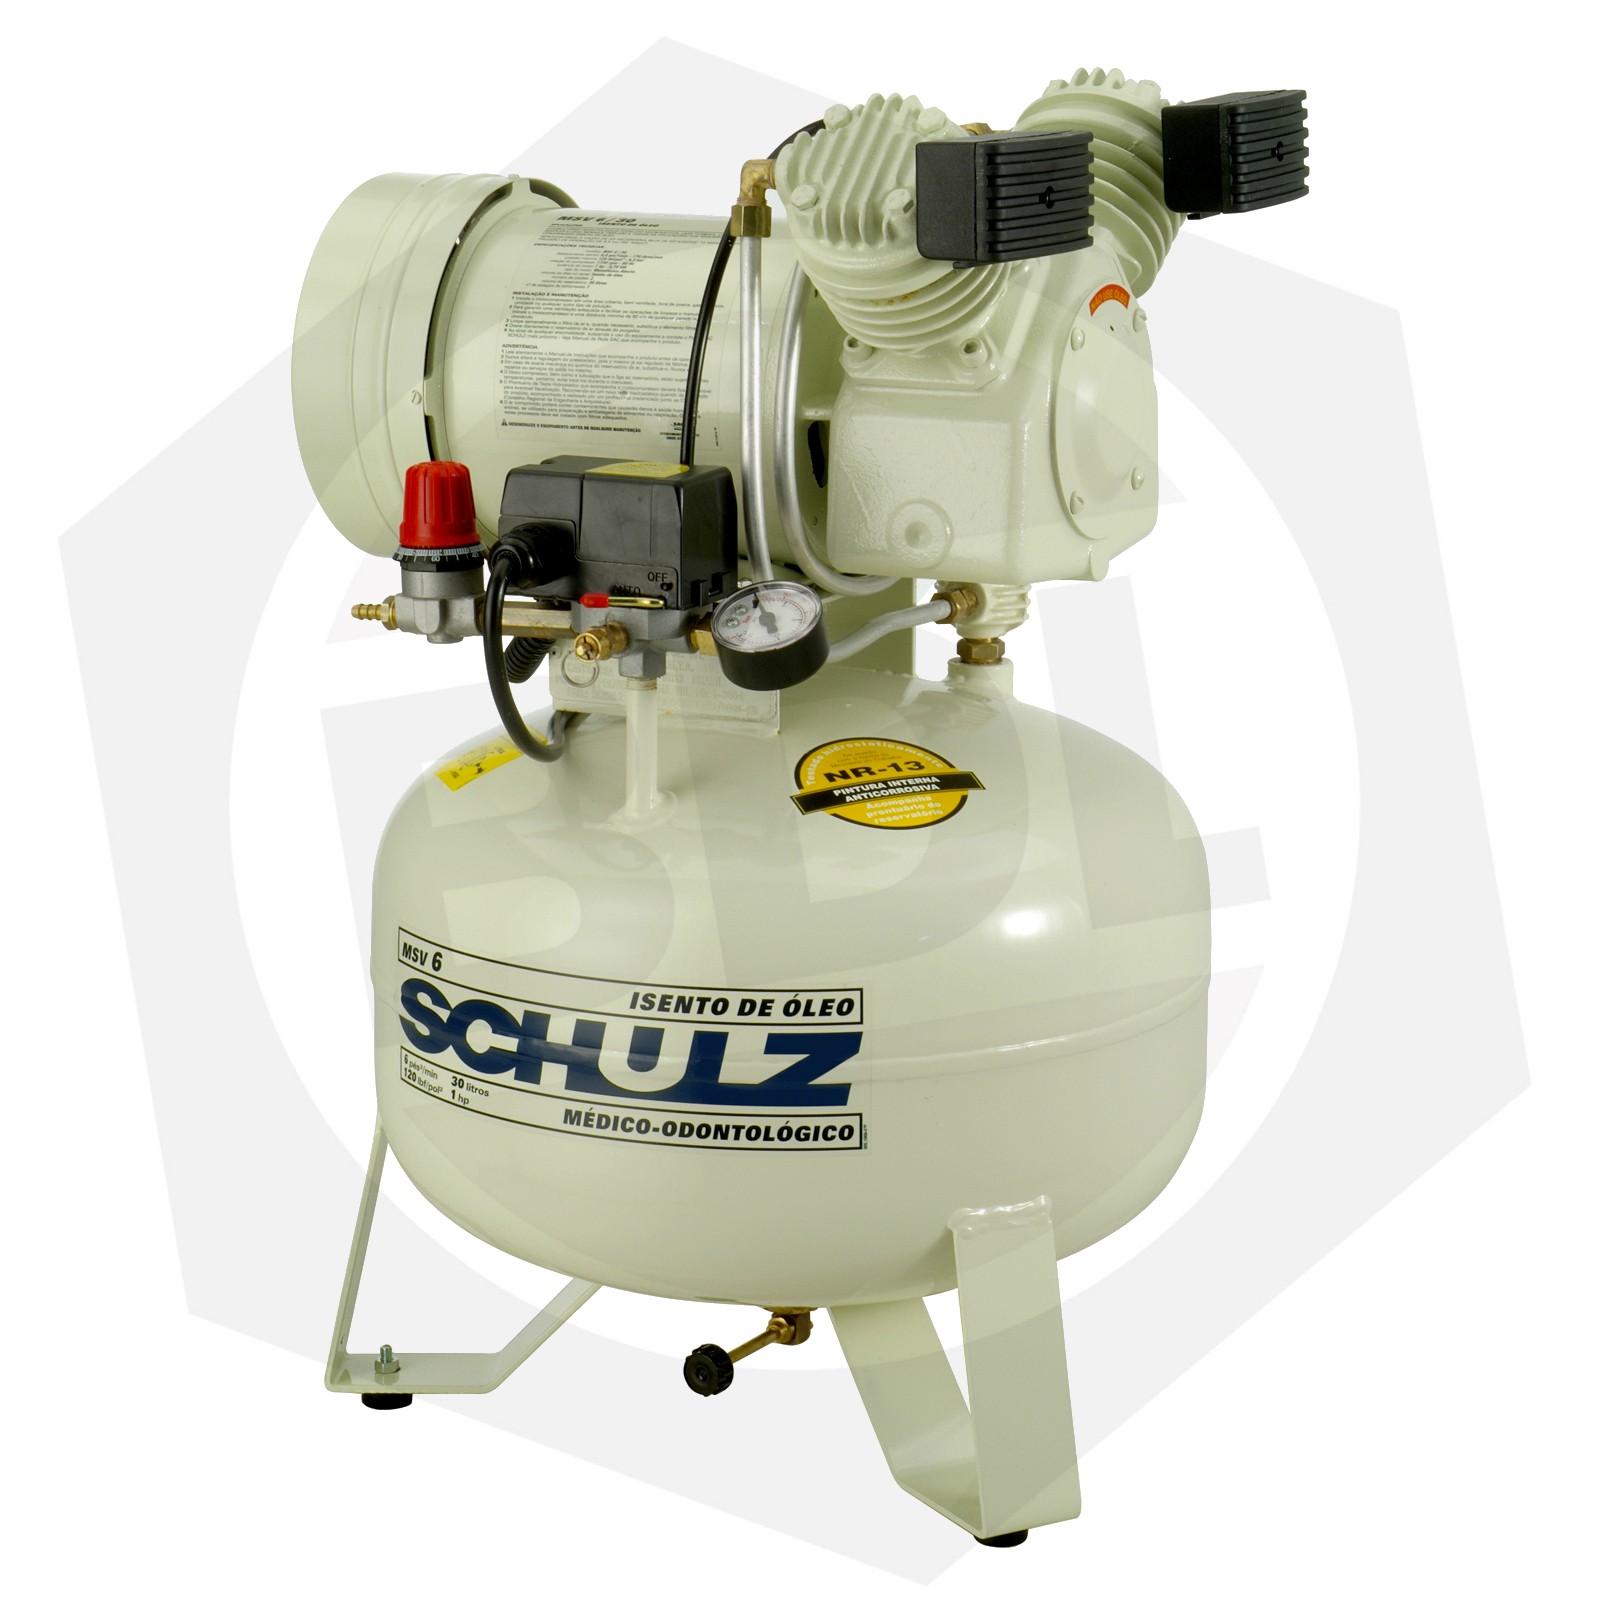 Compresor Odontológico Schulz MSV-6/30 - 30 Litros / 220 V